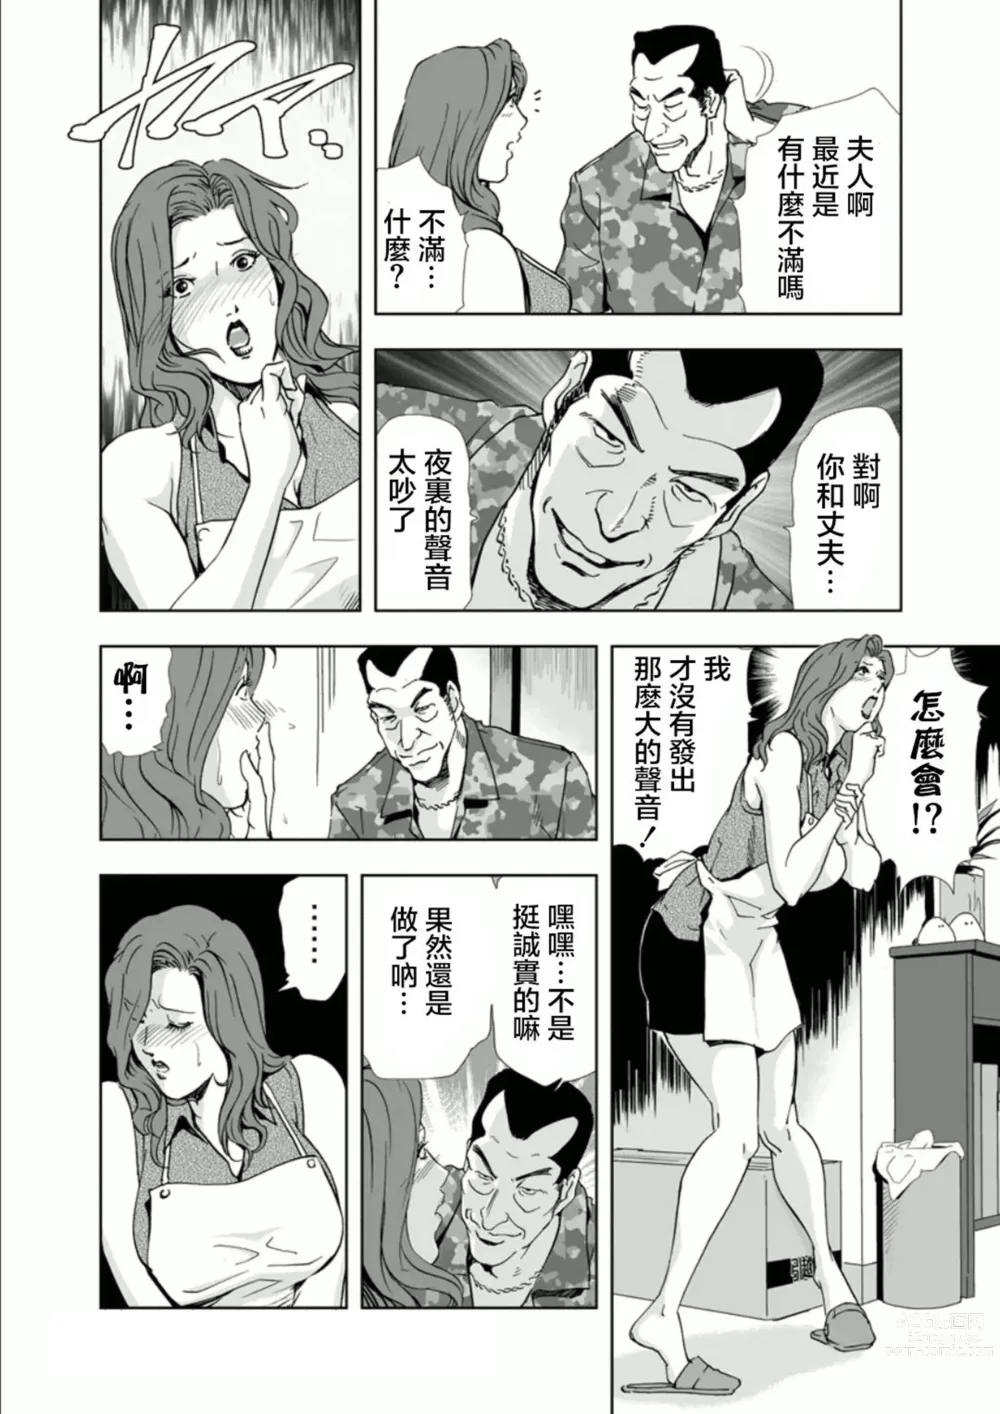 Page 6 of manga Netorare 1